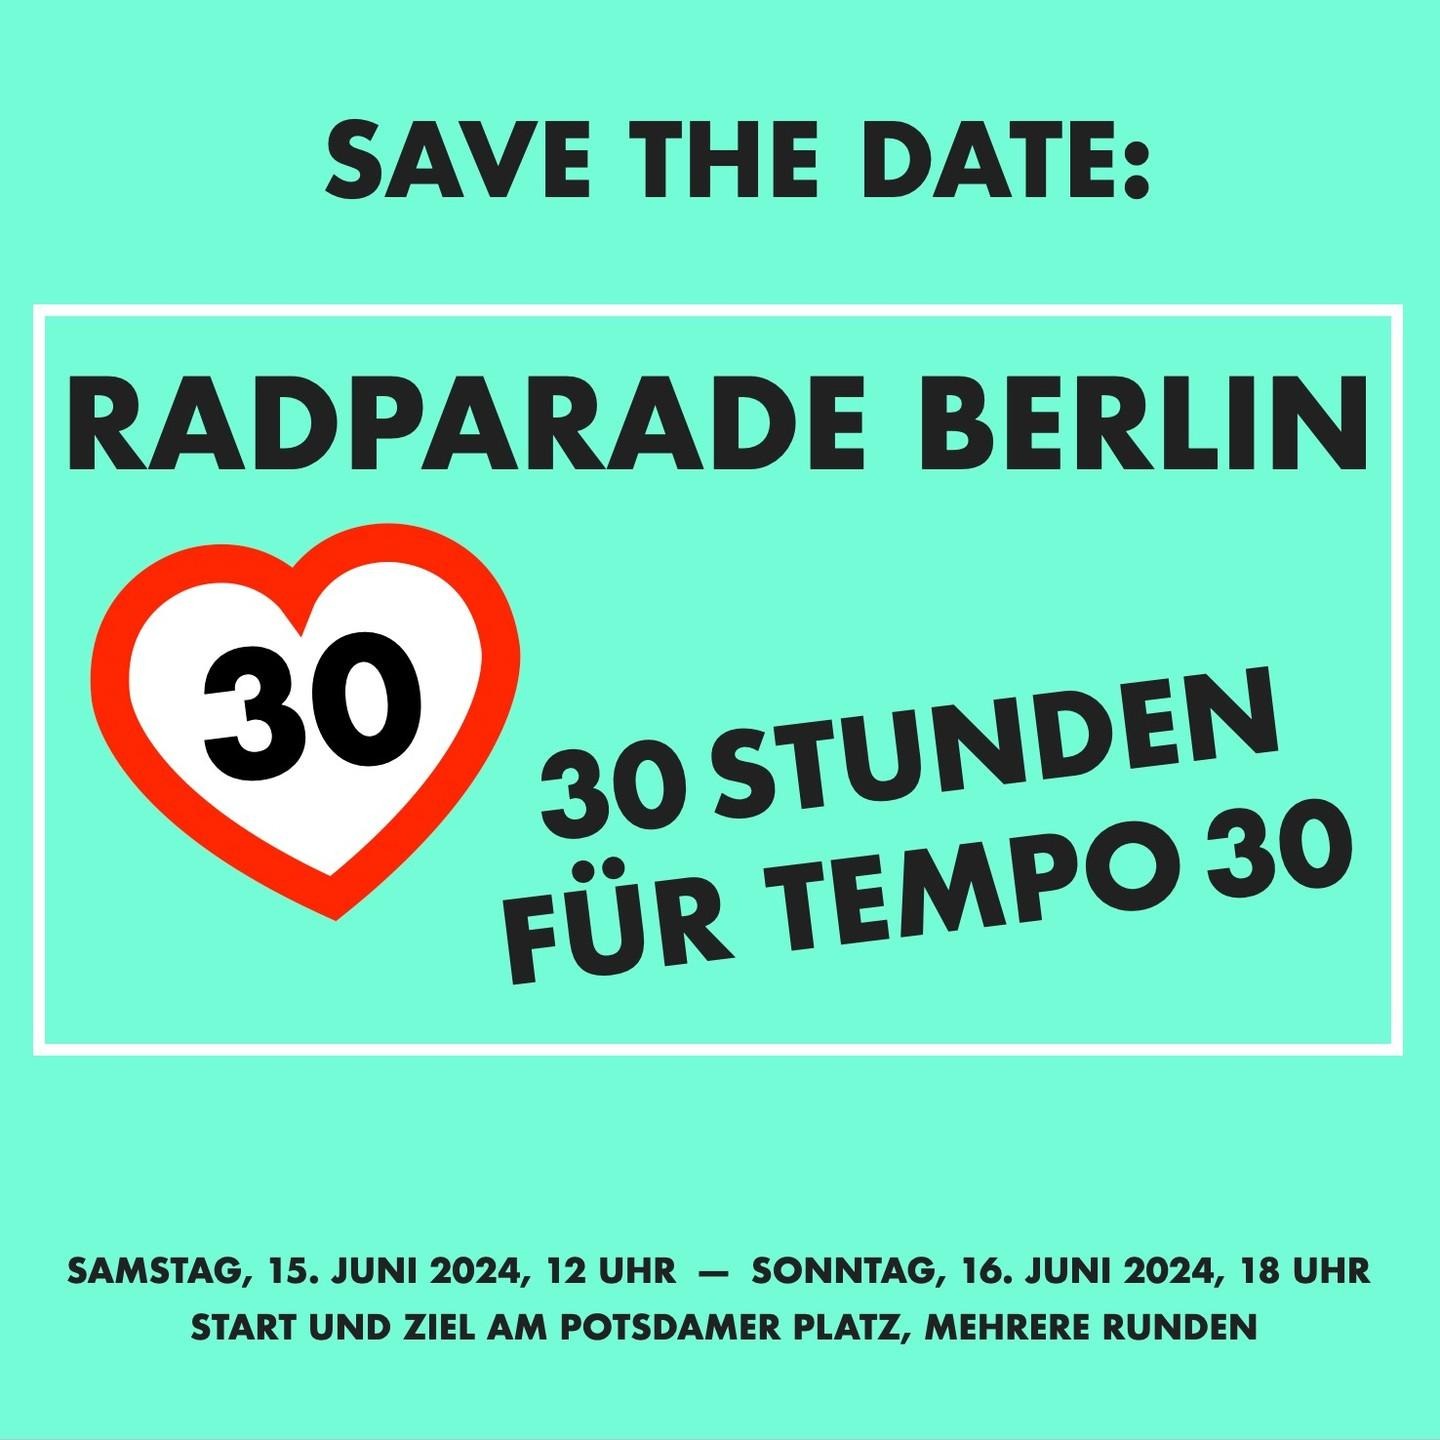 Ein Sharepic: "Save the Date: Radparade Berlin. 30 Stunden für Tempo 30" Dazu ein Tempo-30-Verkehrsschild, welches zu einem Herz umgeformt ist.